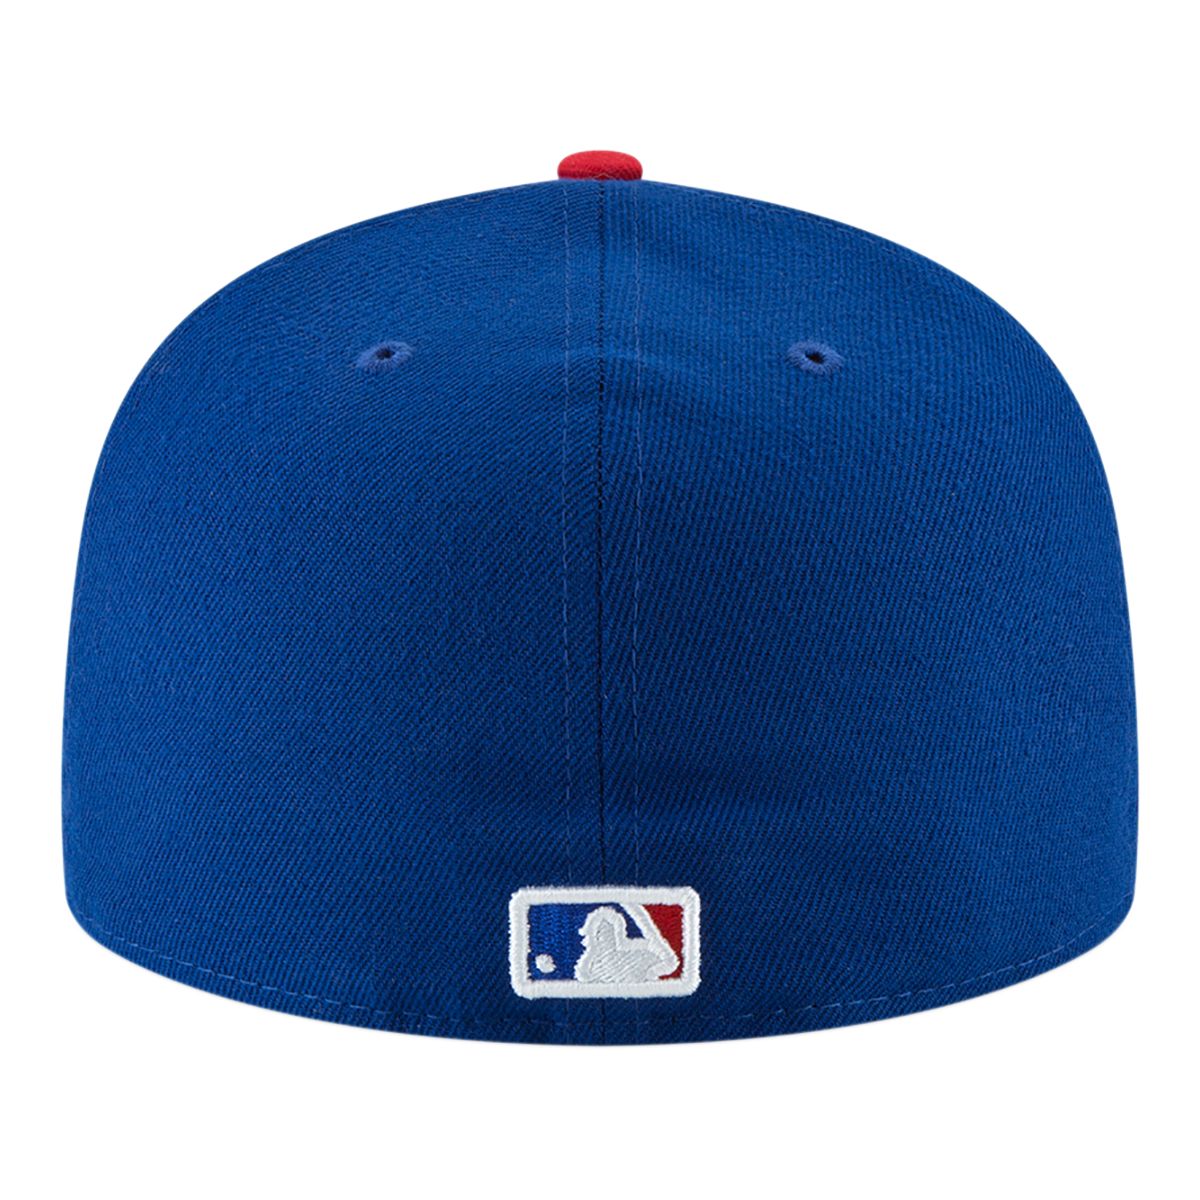 MLB NEW YORK METS HYBRID MEN'S WOVEN PANT (ROYAL BLUE)